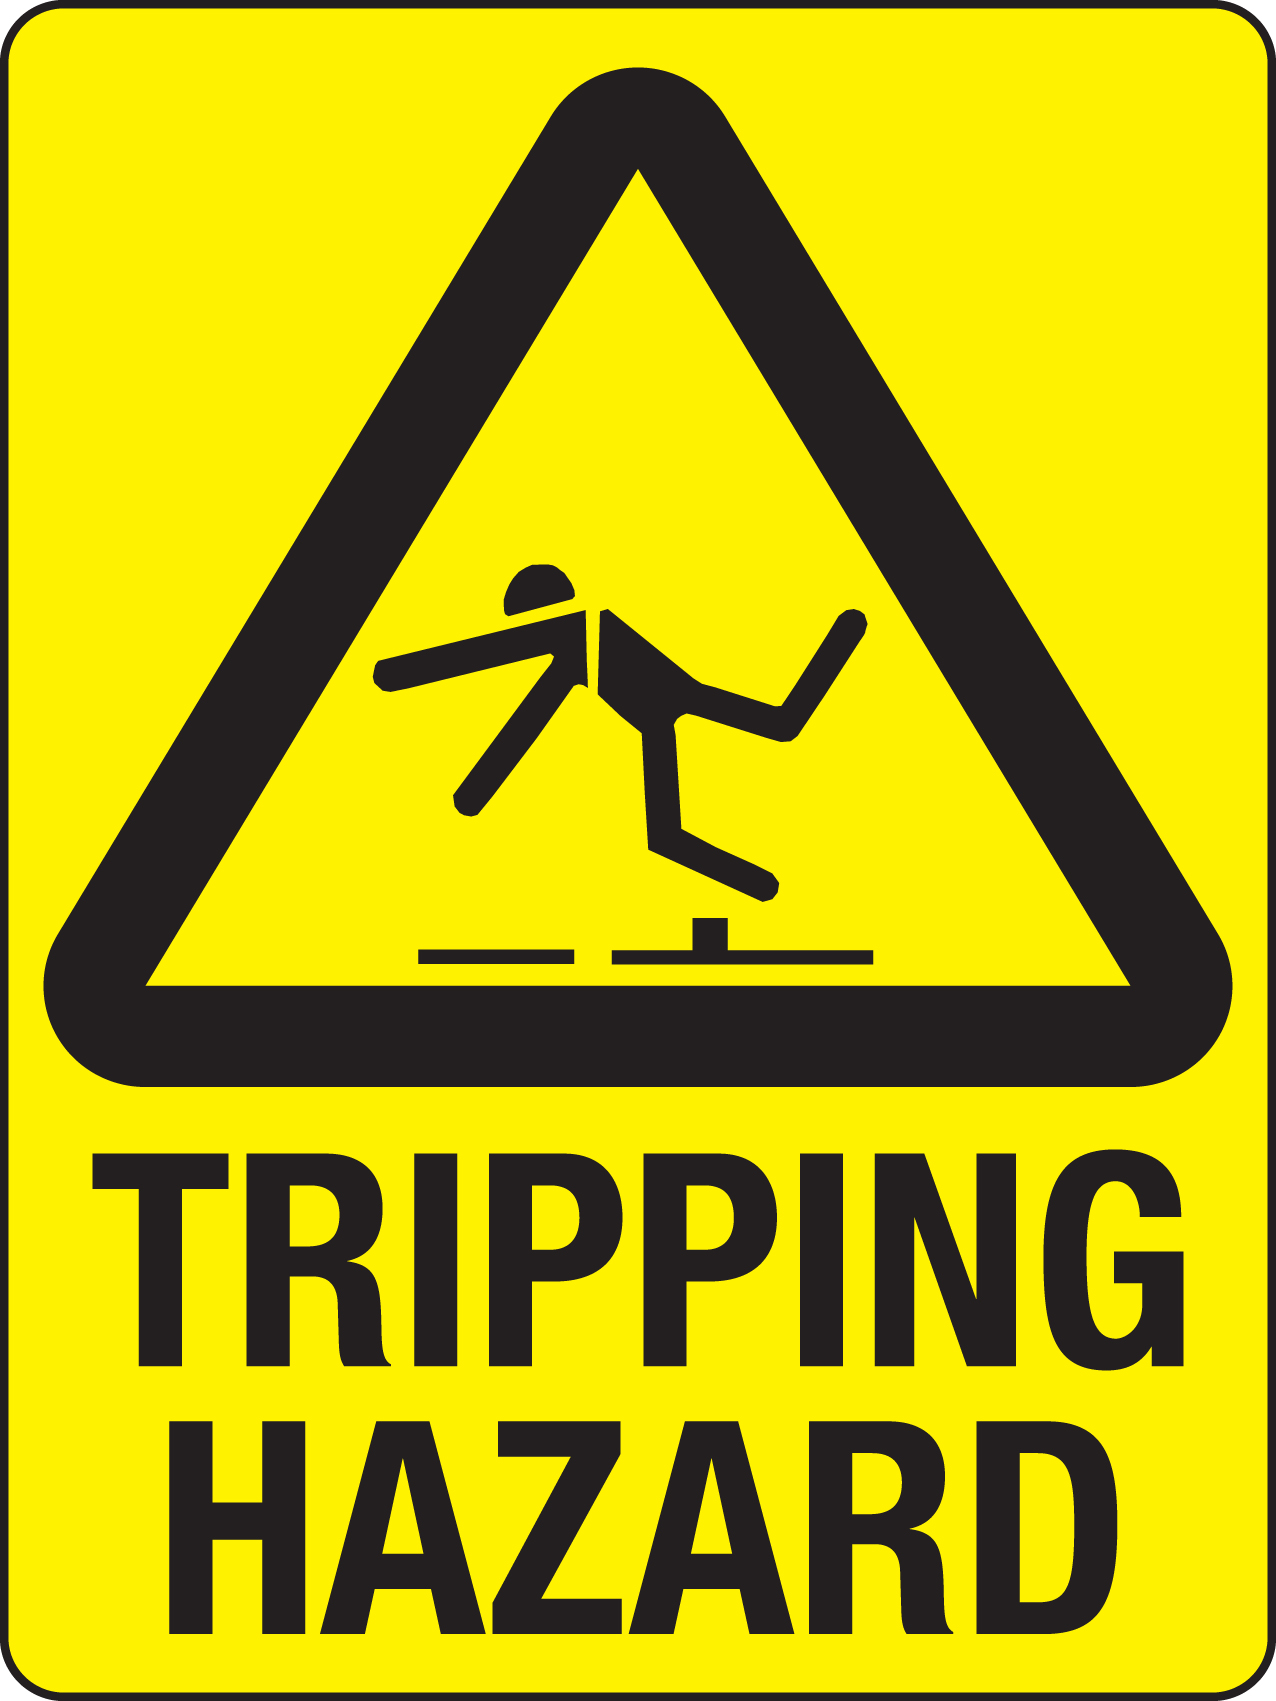 trip-hazard-sign-drawing-free-image-download